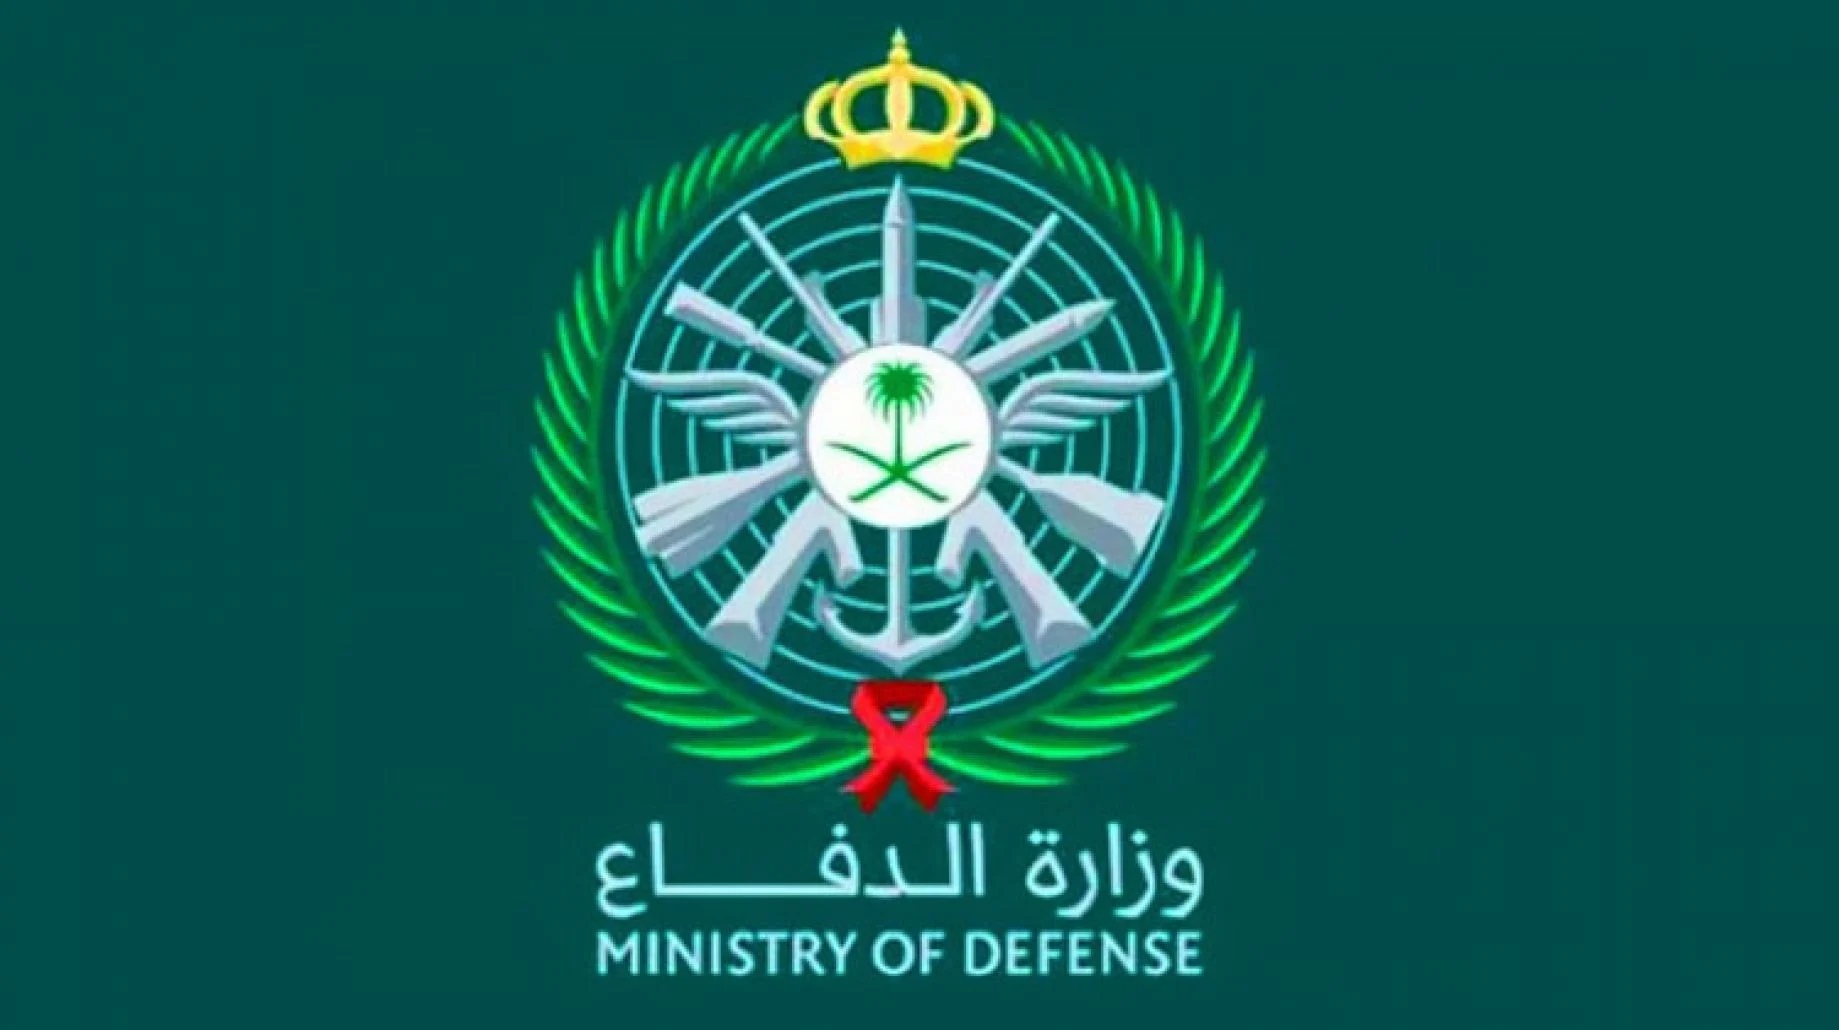 وزارة الدفاع السعودي تعلن عن رابط وشروط القبول للتجنيد الموحد للفترة الثانية 1443هـ للرجال والنساء